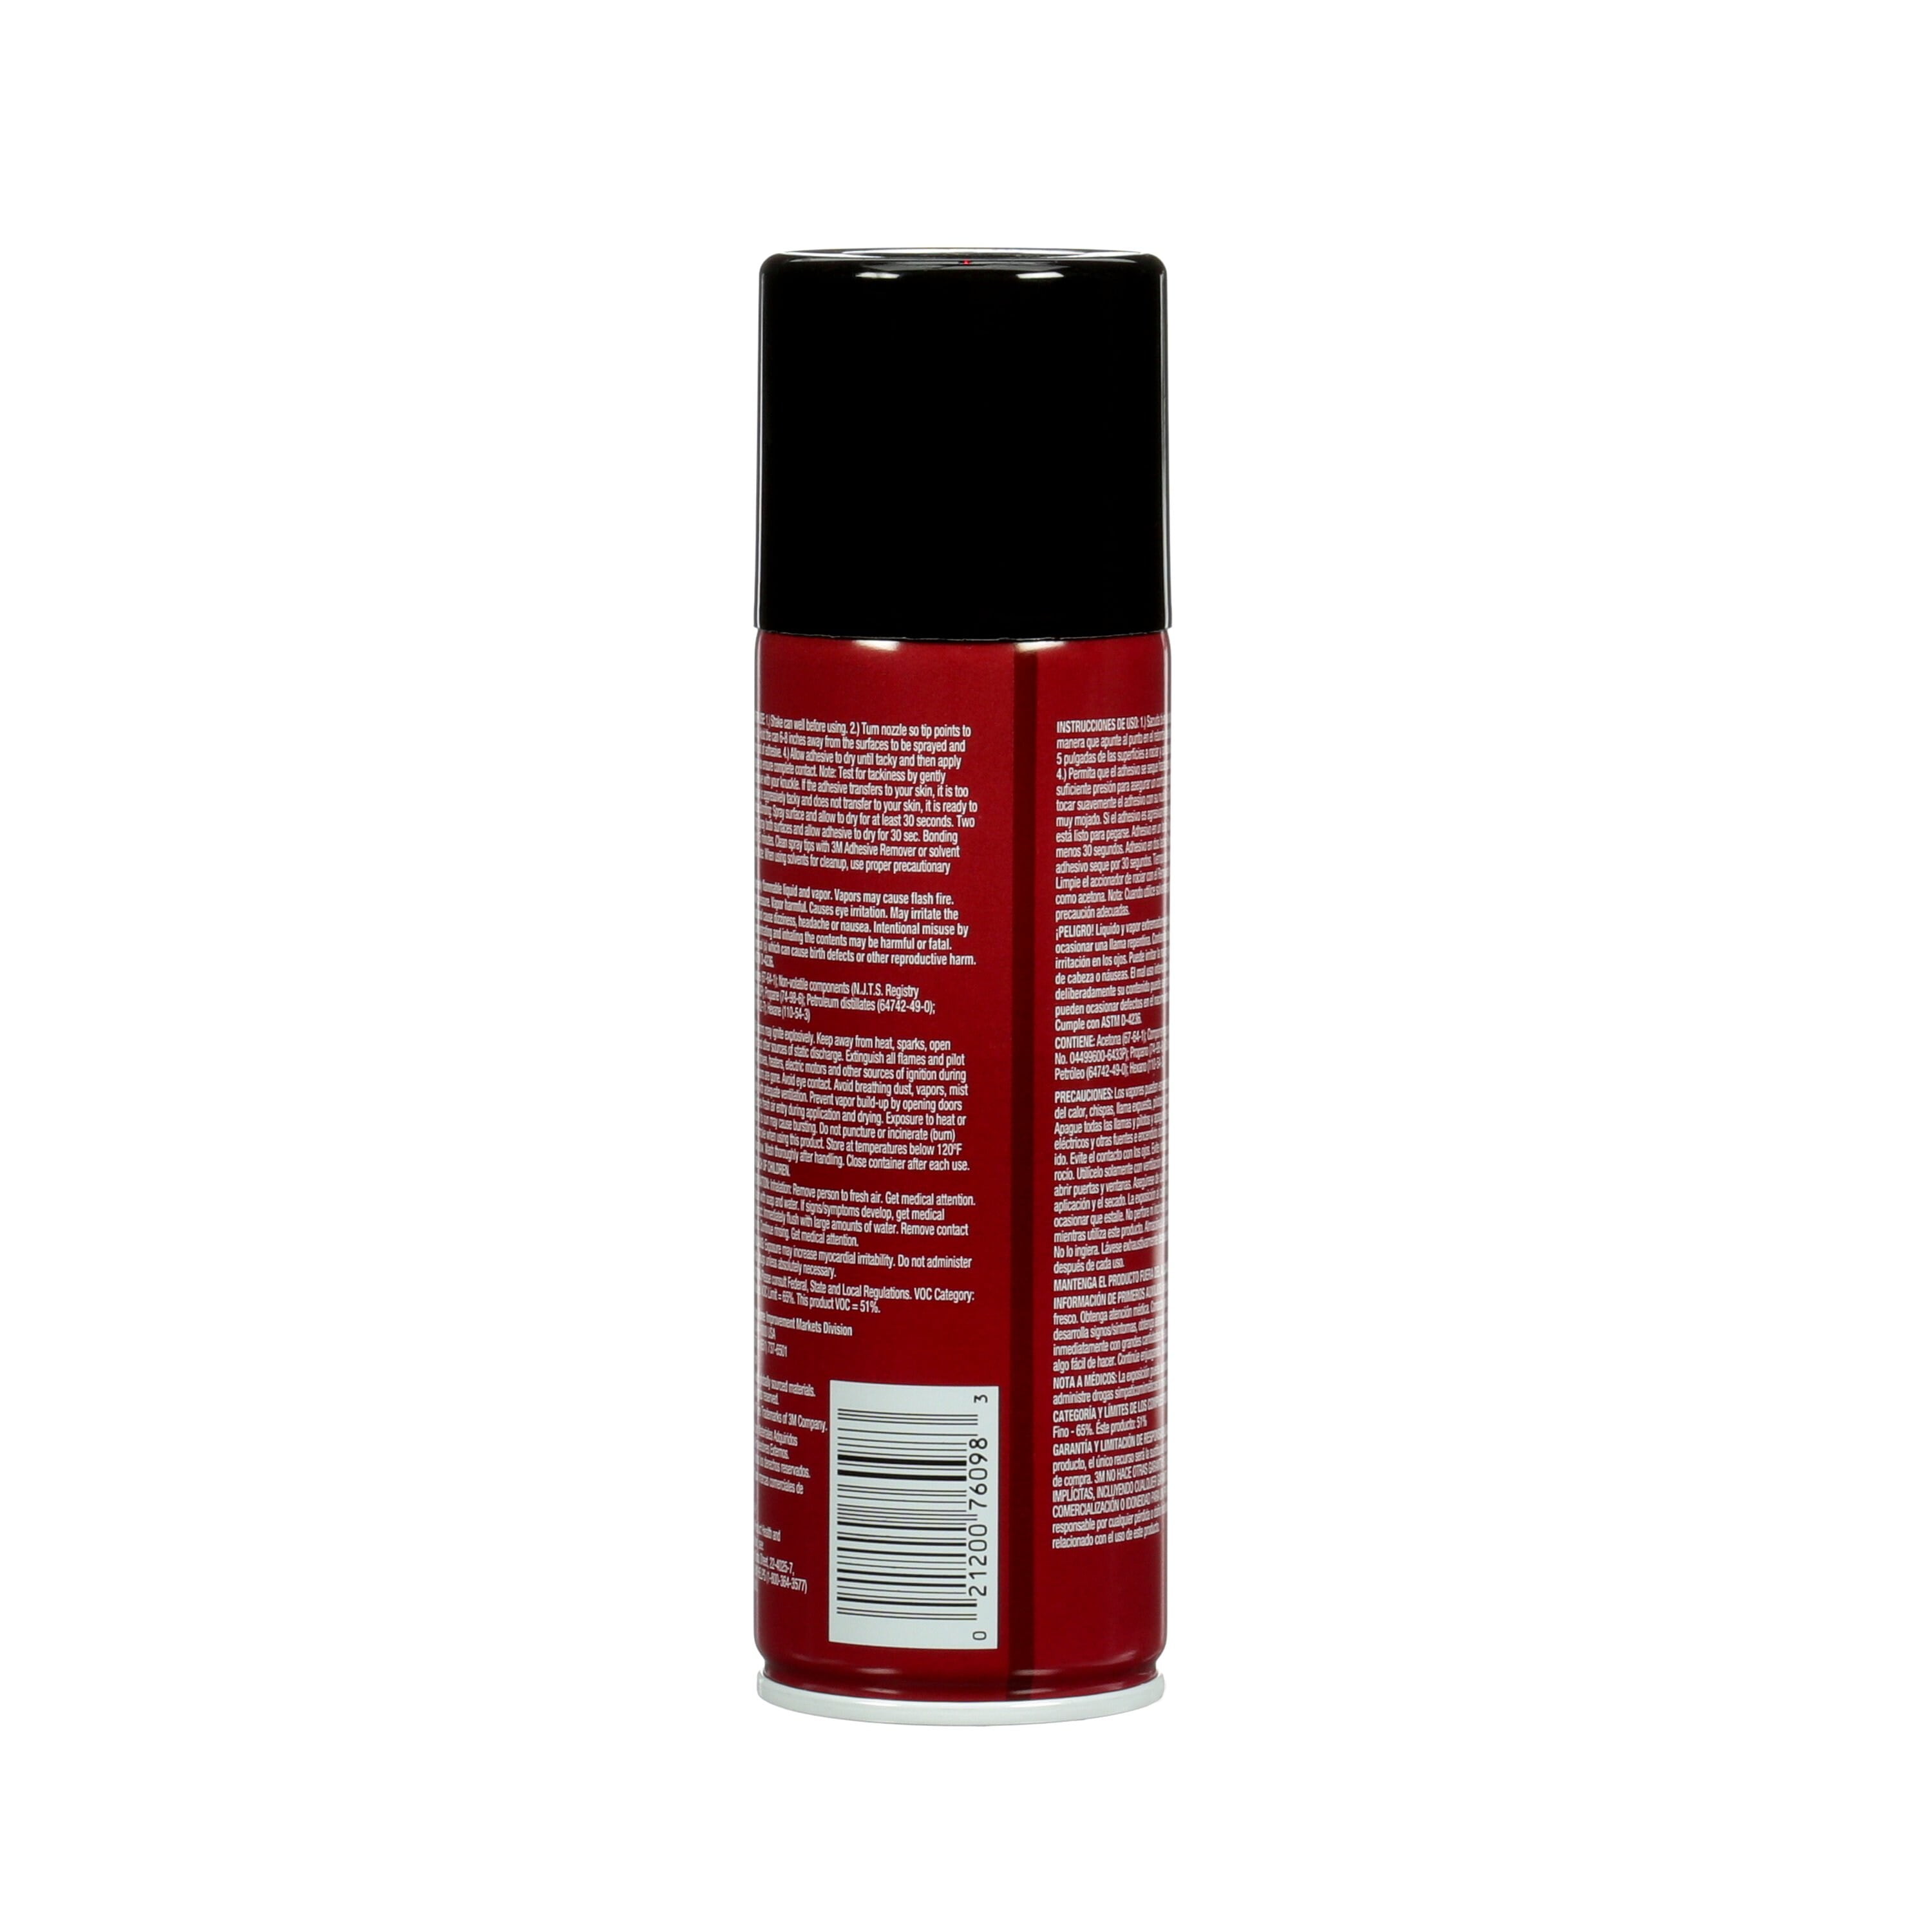 3M 76098 Super 77 Multipurpose Spray Adhesive, 7.3 oz, 2 Pack 